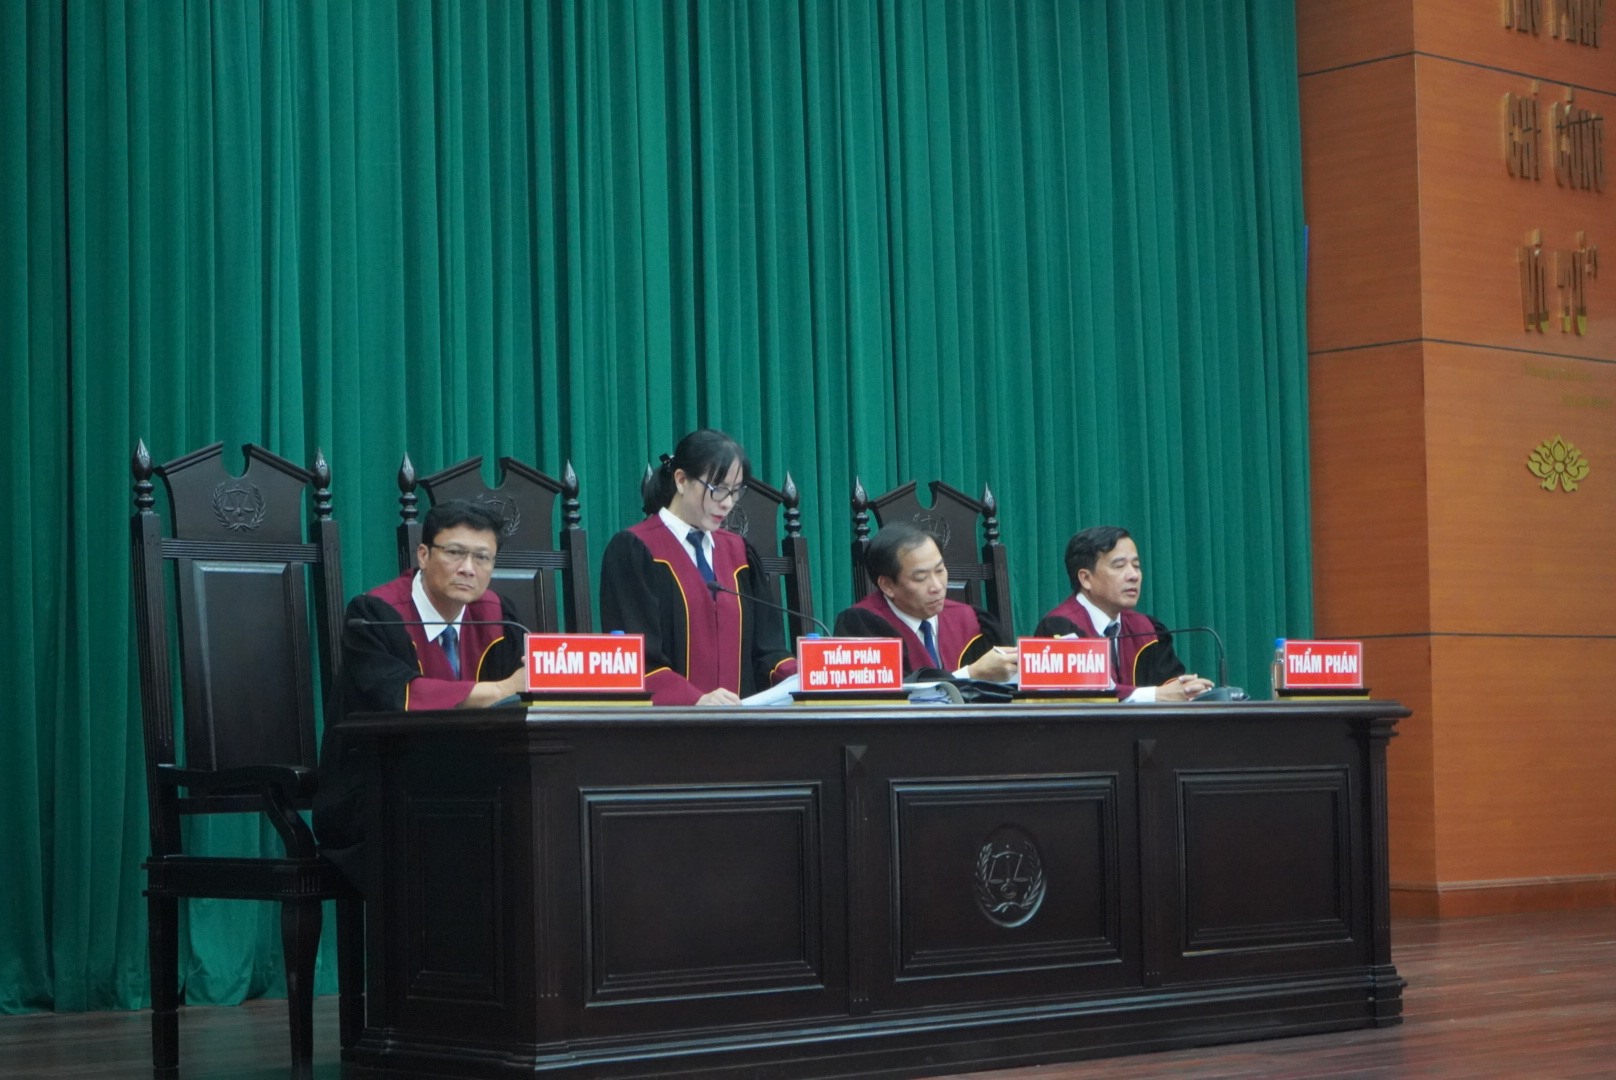 Hồi tháng 12.2022, TAND tỉnh Đồng Nai xét xử sơ thẩm, tuyên phạt bị cáo Phan Thanh Hữu 16 năm tù; Viễn 17 năm tù cùng về tội buôn lậu. Các bị cáo còn lại bị phạt tiền, phạt bằng thời gian tạm giam, từ 3 năm tù nhưng cho hưởng án treo đến 15 năm tù.